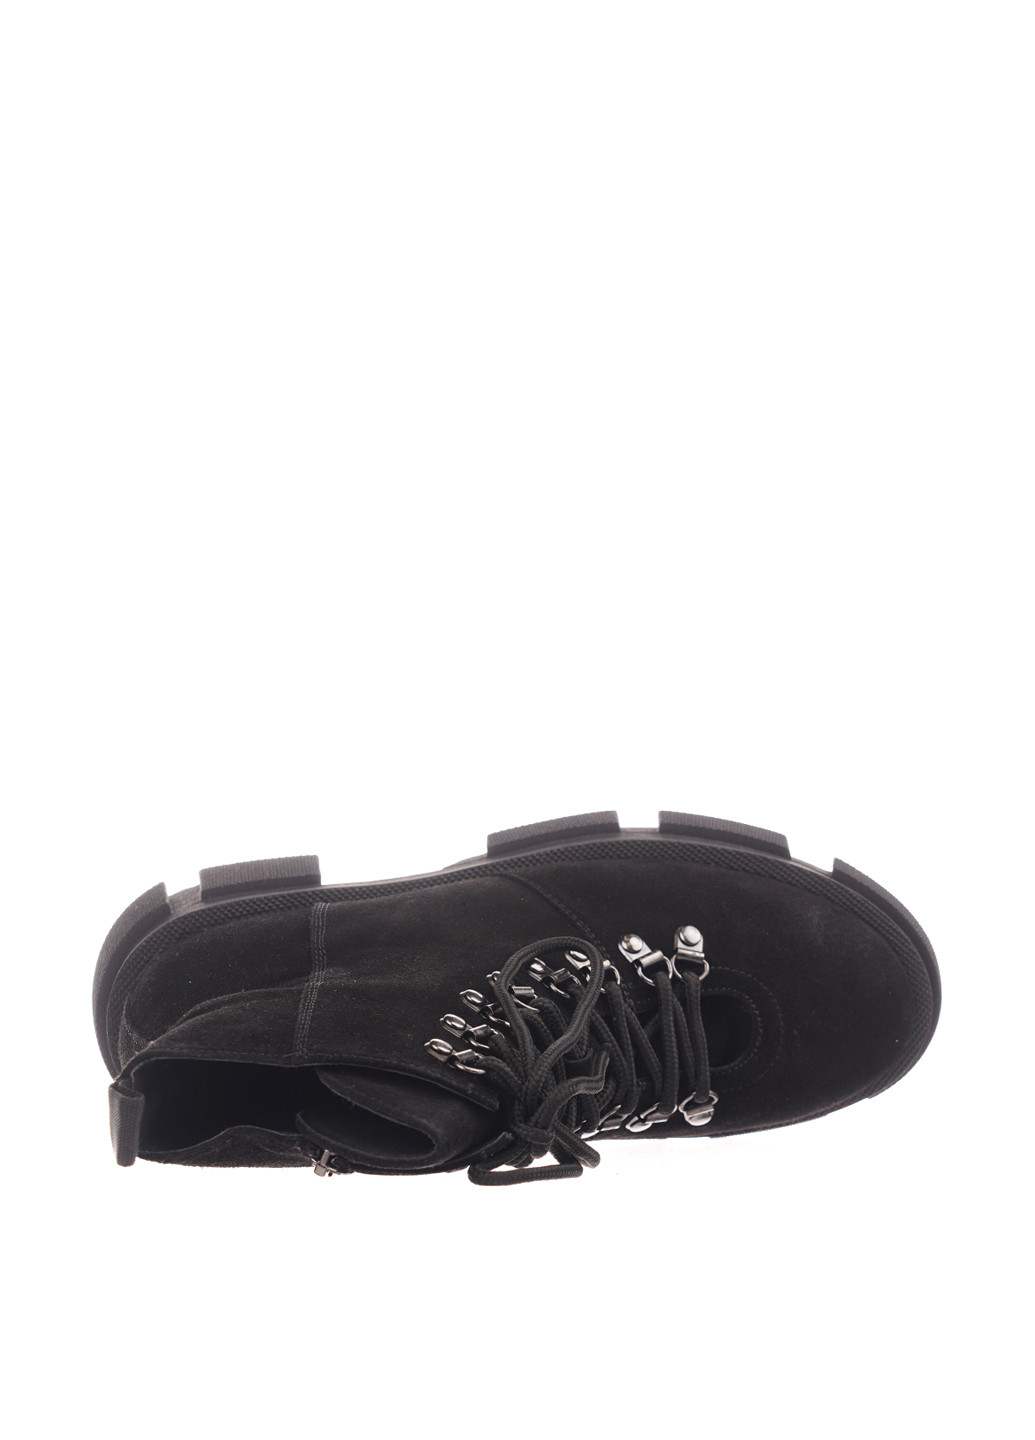 Зимние ботинки Camalini со шнуровкой, люверсы из натуральной замши